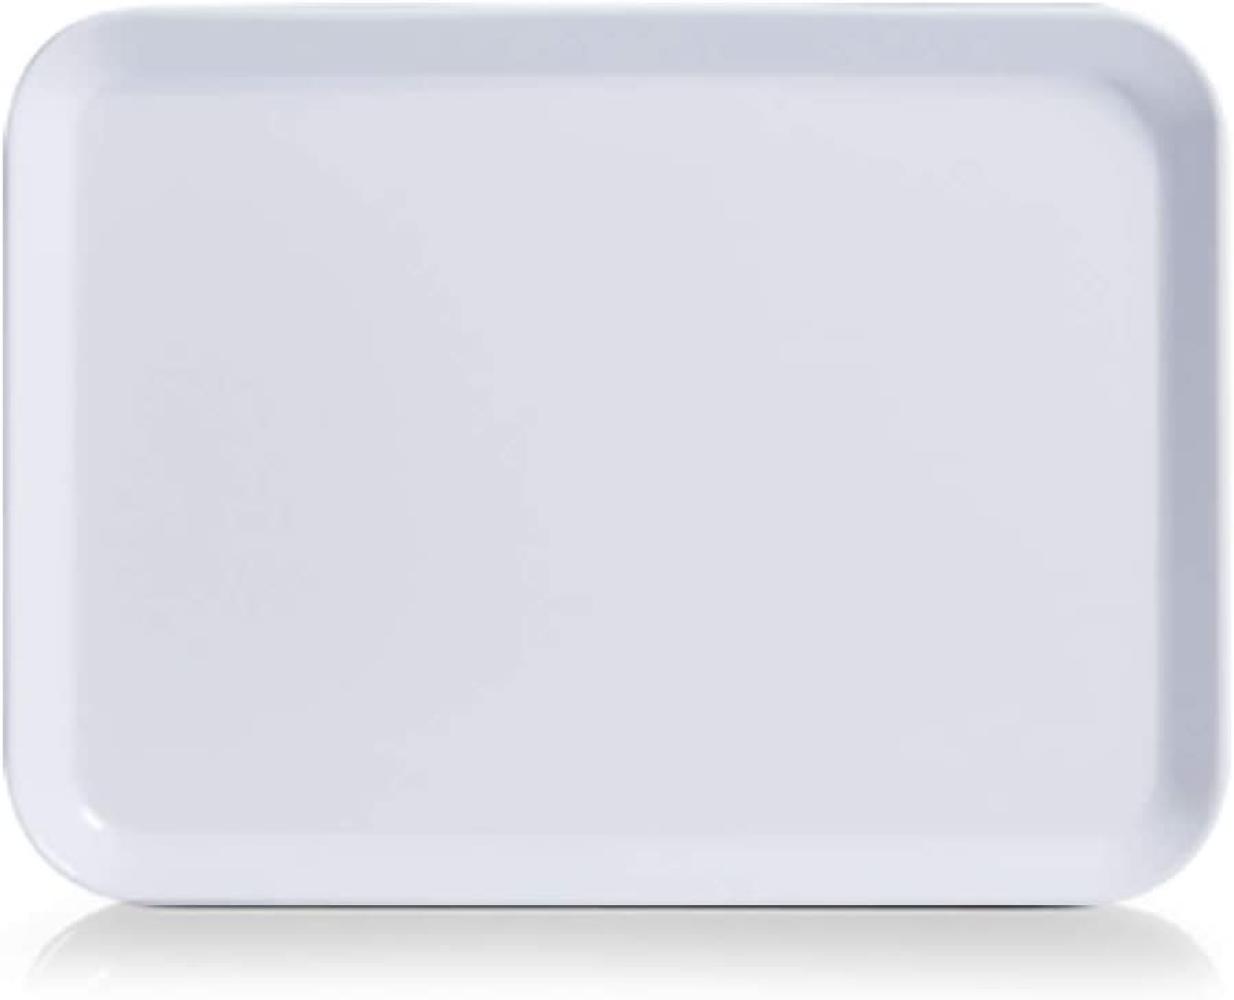 Zeller Melamintablett, Melamin, Weiß, 24 x 18 cm Bild 1